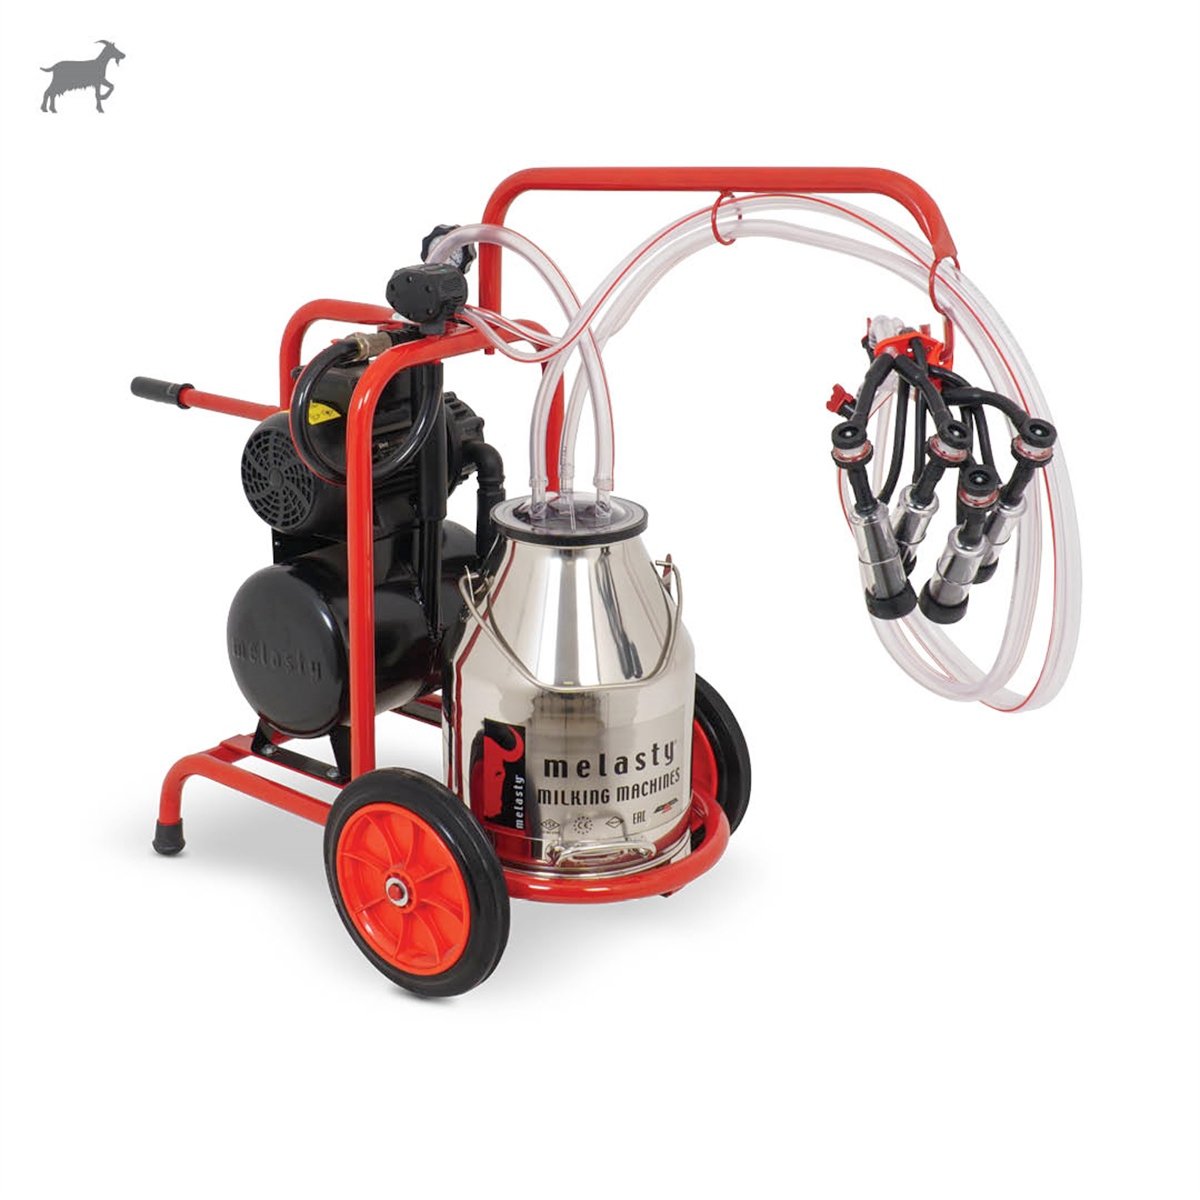 Melasty İkili Keçi Süt Sağma Makinesi (Paslanmaz Güğüm - Kauçuk Memelik)  (Kuru Pompa) | Cimritilki.com